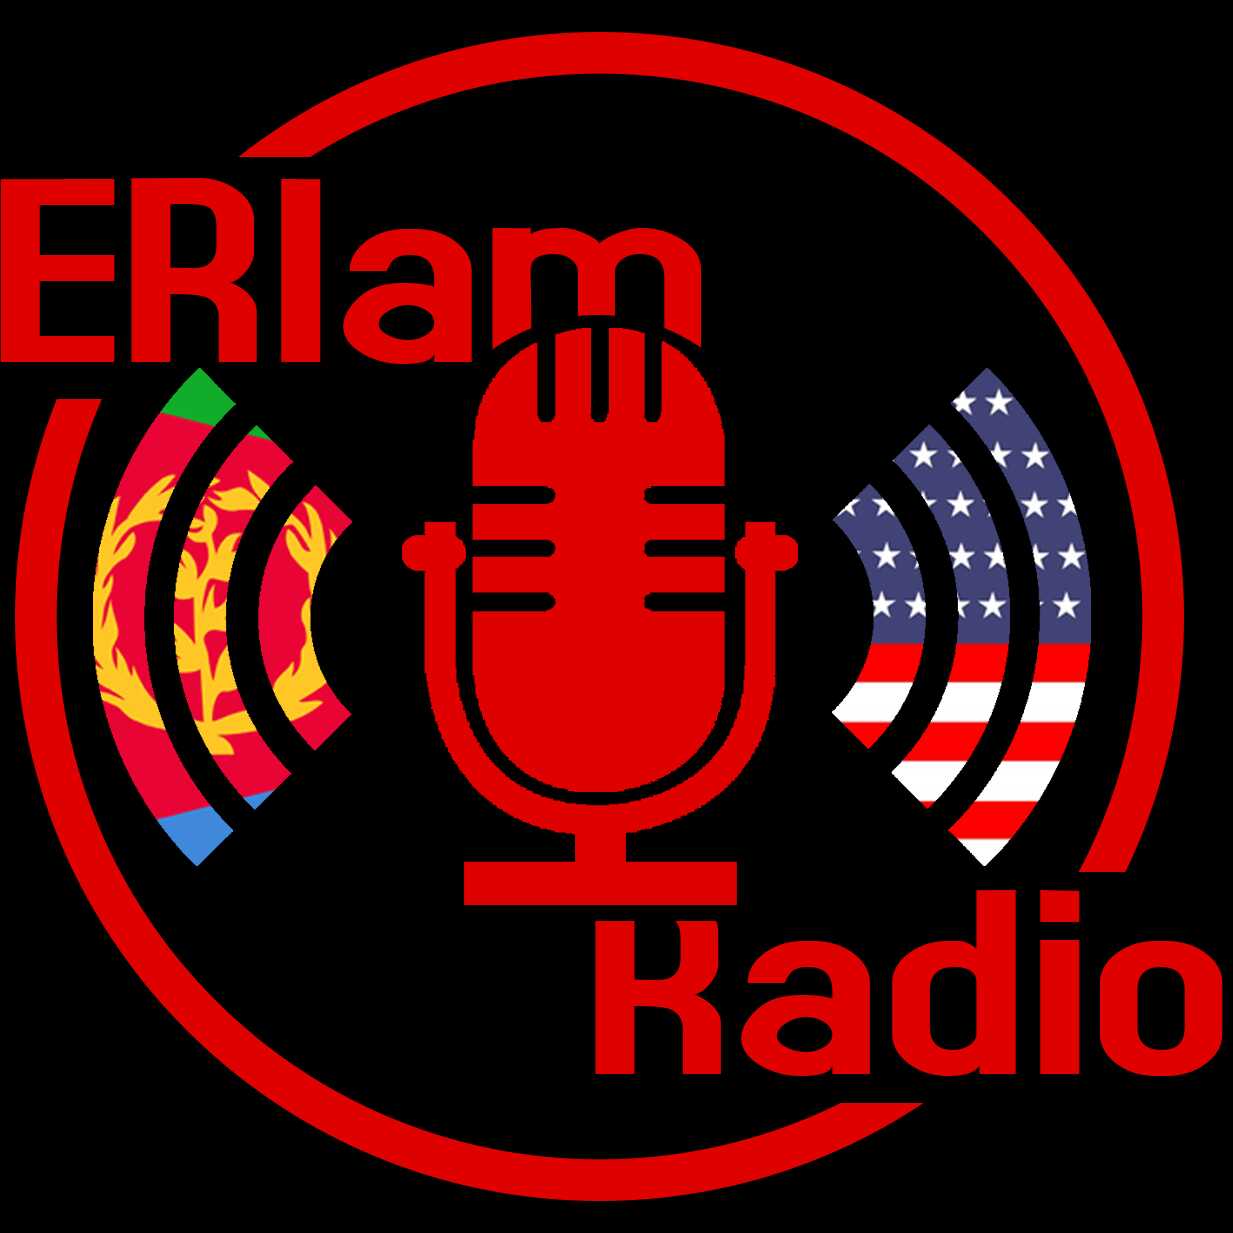 ERIam Podcast - Episode 3